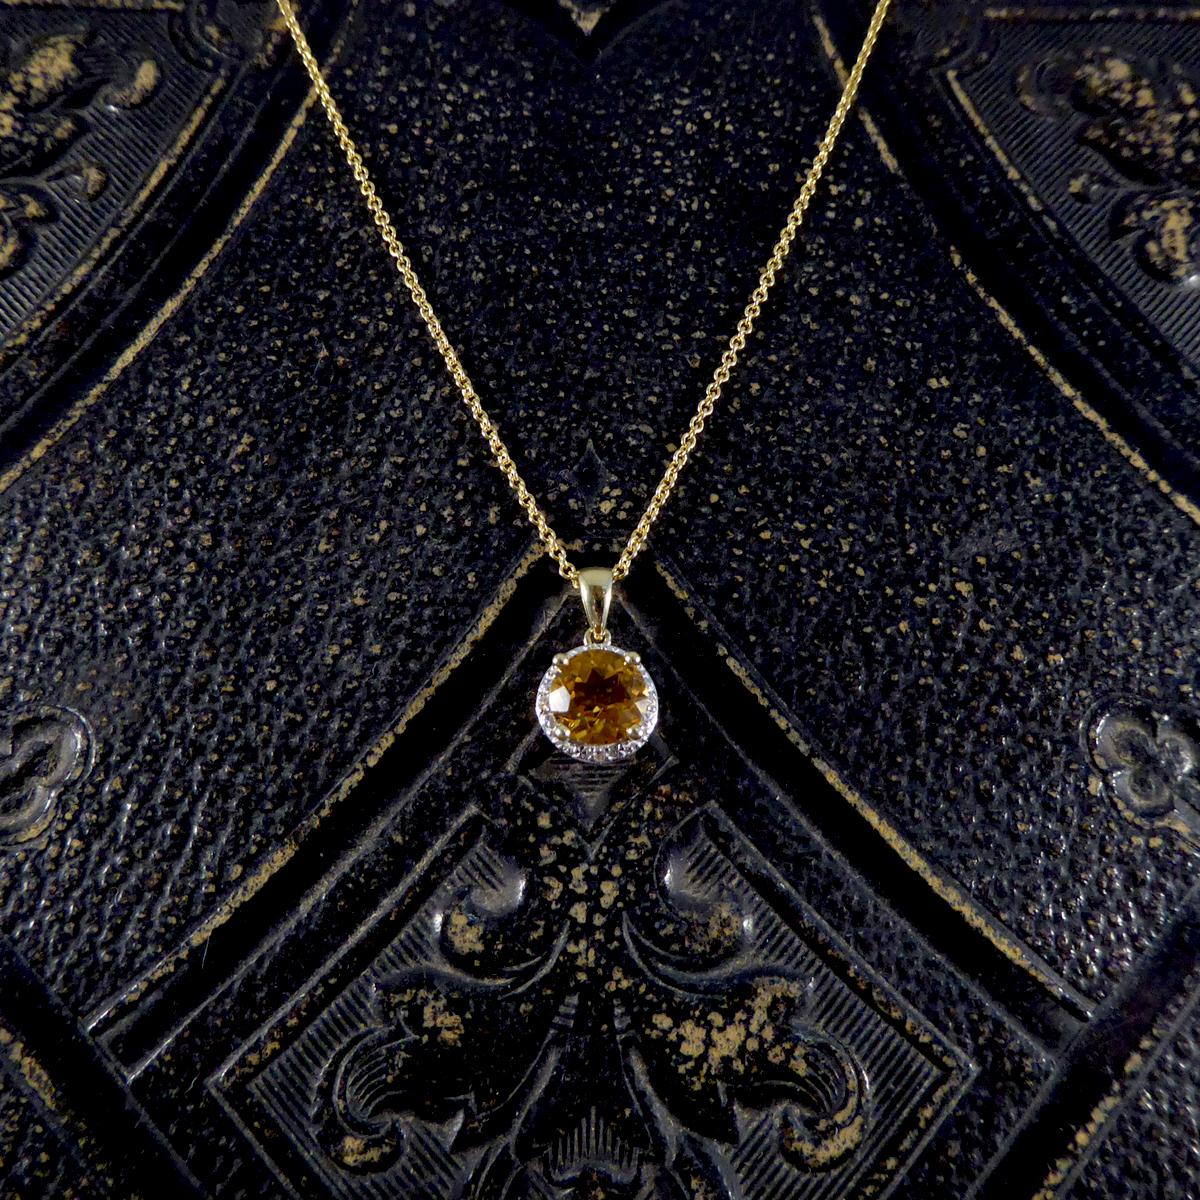 Diese schöne neue Halskette besteht aus einem Citrene-Edelstein in der Mitte und einem mit vier kleinen Diamanten besetzten Halo um den Citrene. Diese Halskette wurde in Handarbeit aus 9 Karat Gelbgold gefertigt und hängt an einer Kette aus 9 Karat